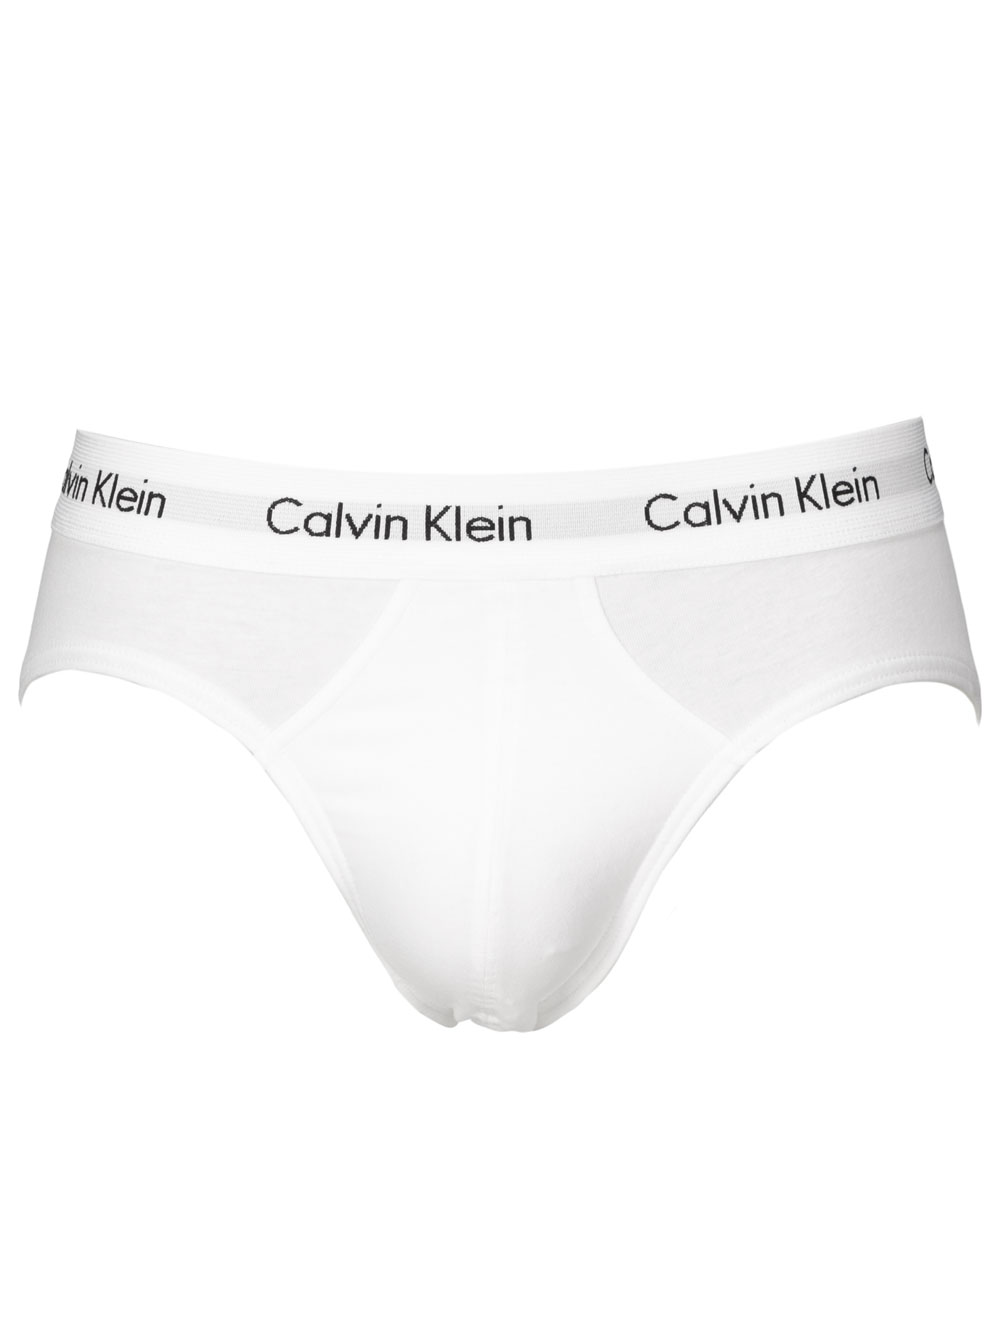 SlipCalvin Klein in Cotone da Uomo colore Bianco Uomo Underwear da Underwear Calvin Klein 